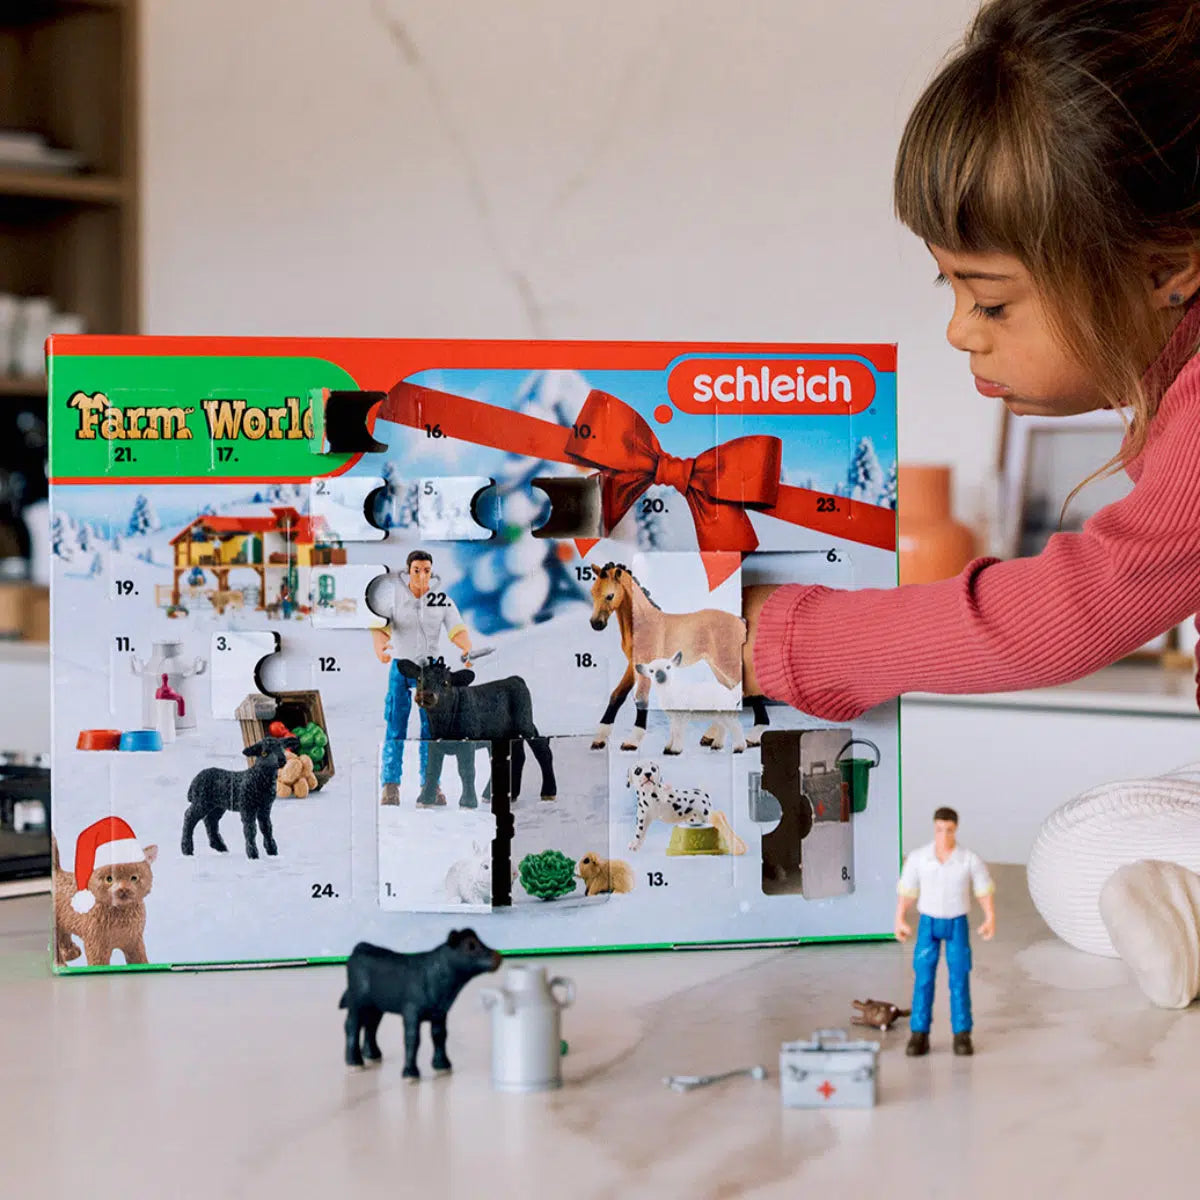 Schleich-Advent Calendar Farm World-98643-Legacy Toys